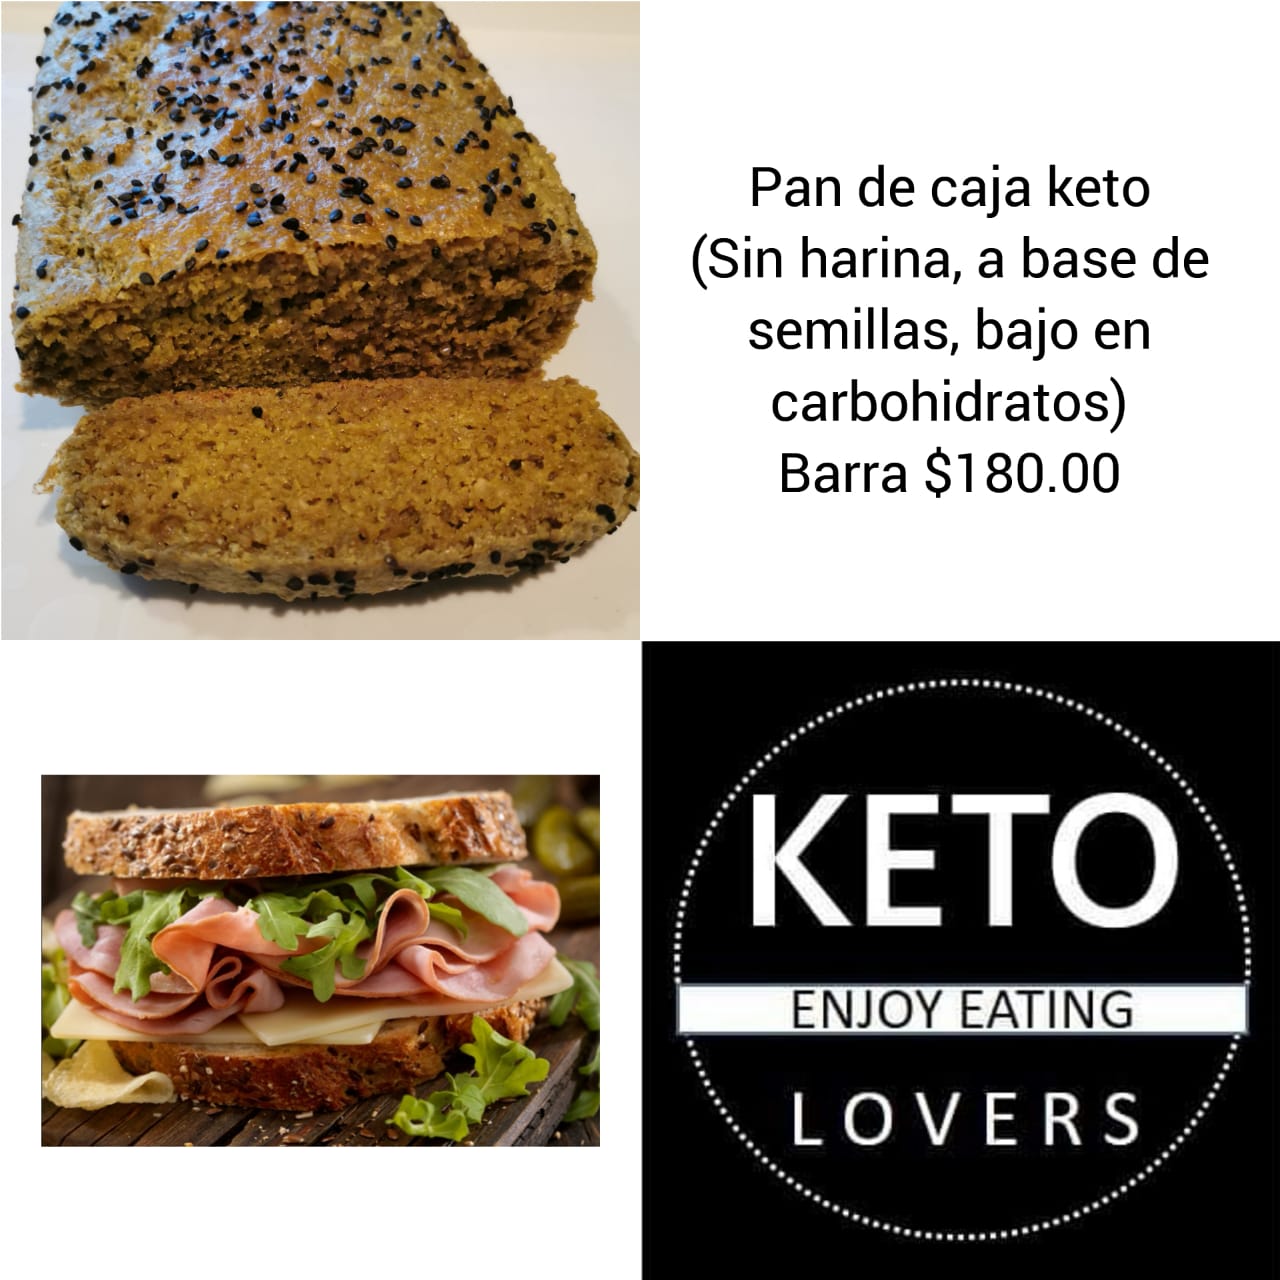 Keto Lovers-Pan De Caja Keto-$180